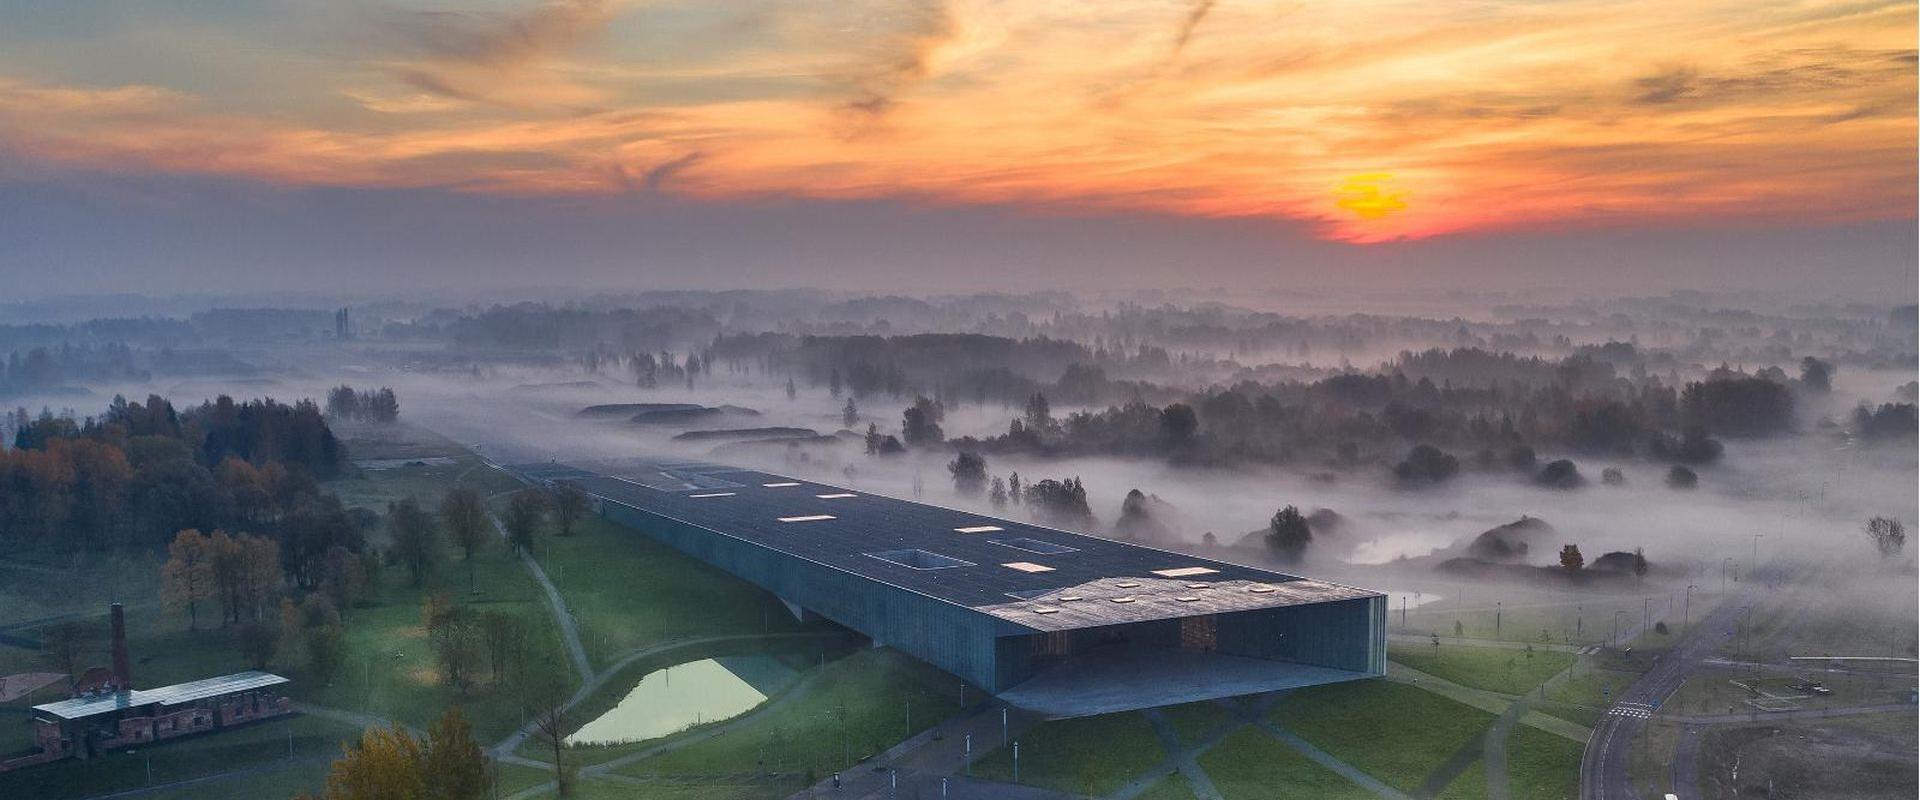 Noin 6000 m2 näyttelytilaa Viron suurimmassa museossa kutsuu perusnäyttelyssä Kohtumised (Tapaamiset) tutustumaan virolaisten arkipäivään halki histor